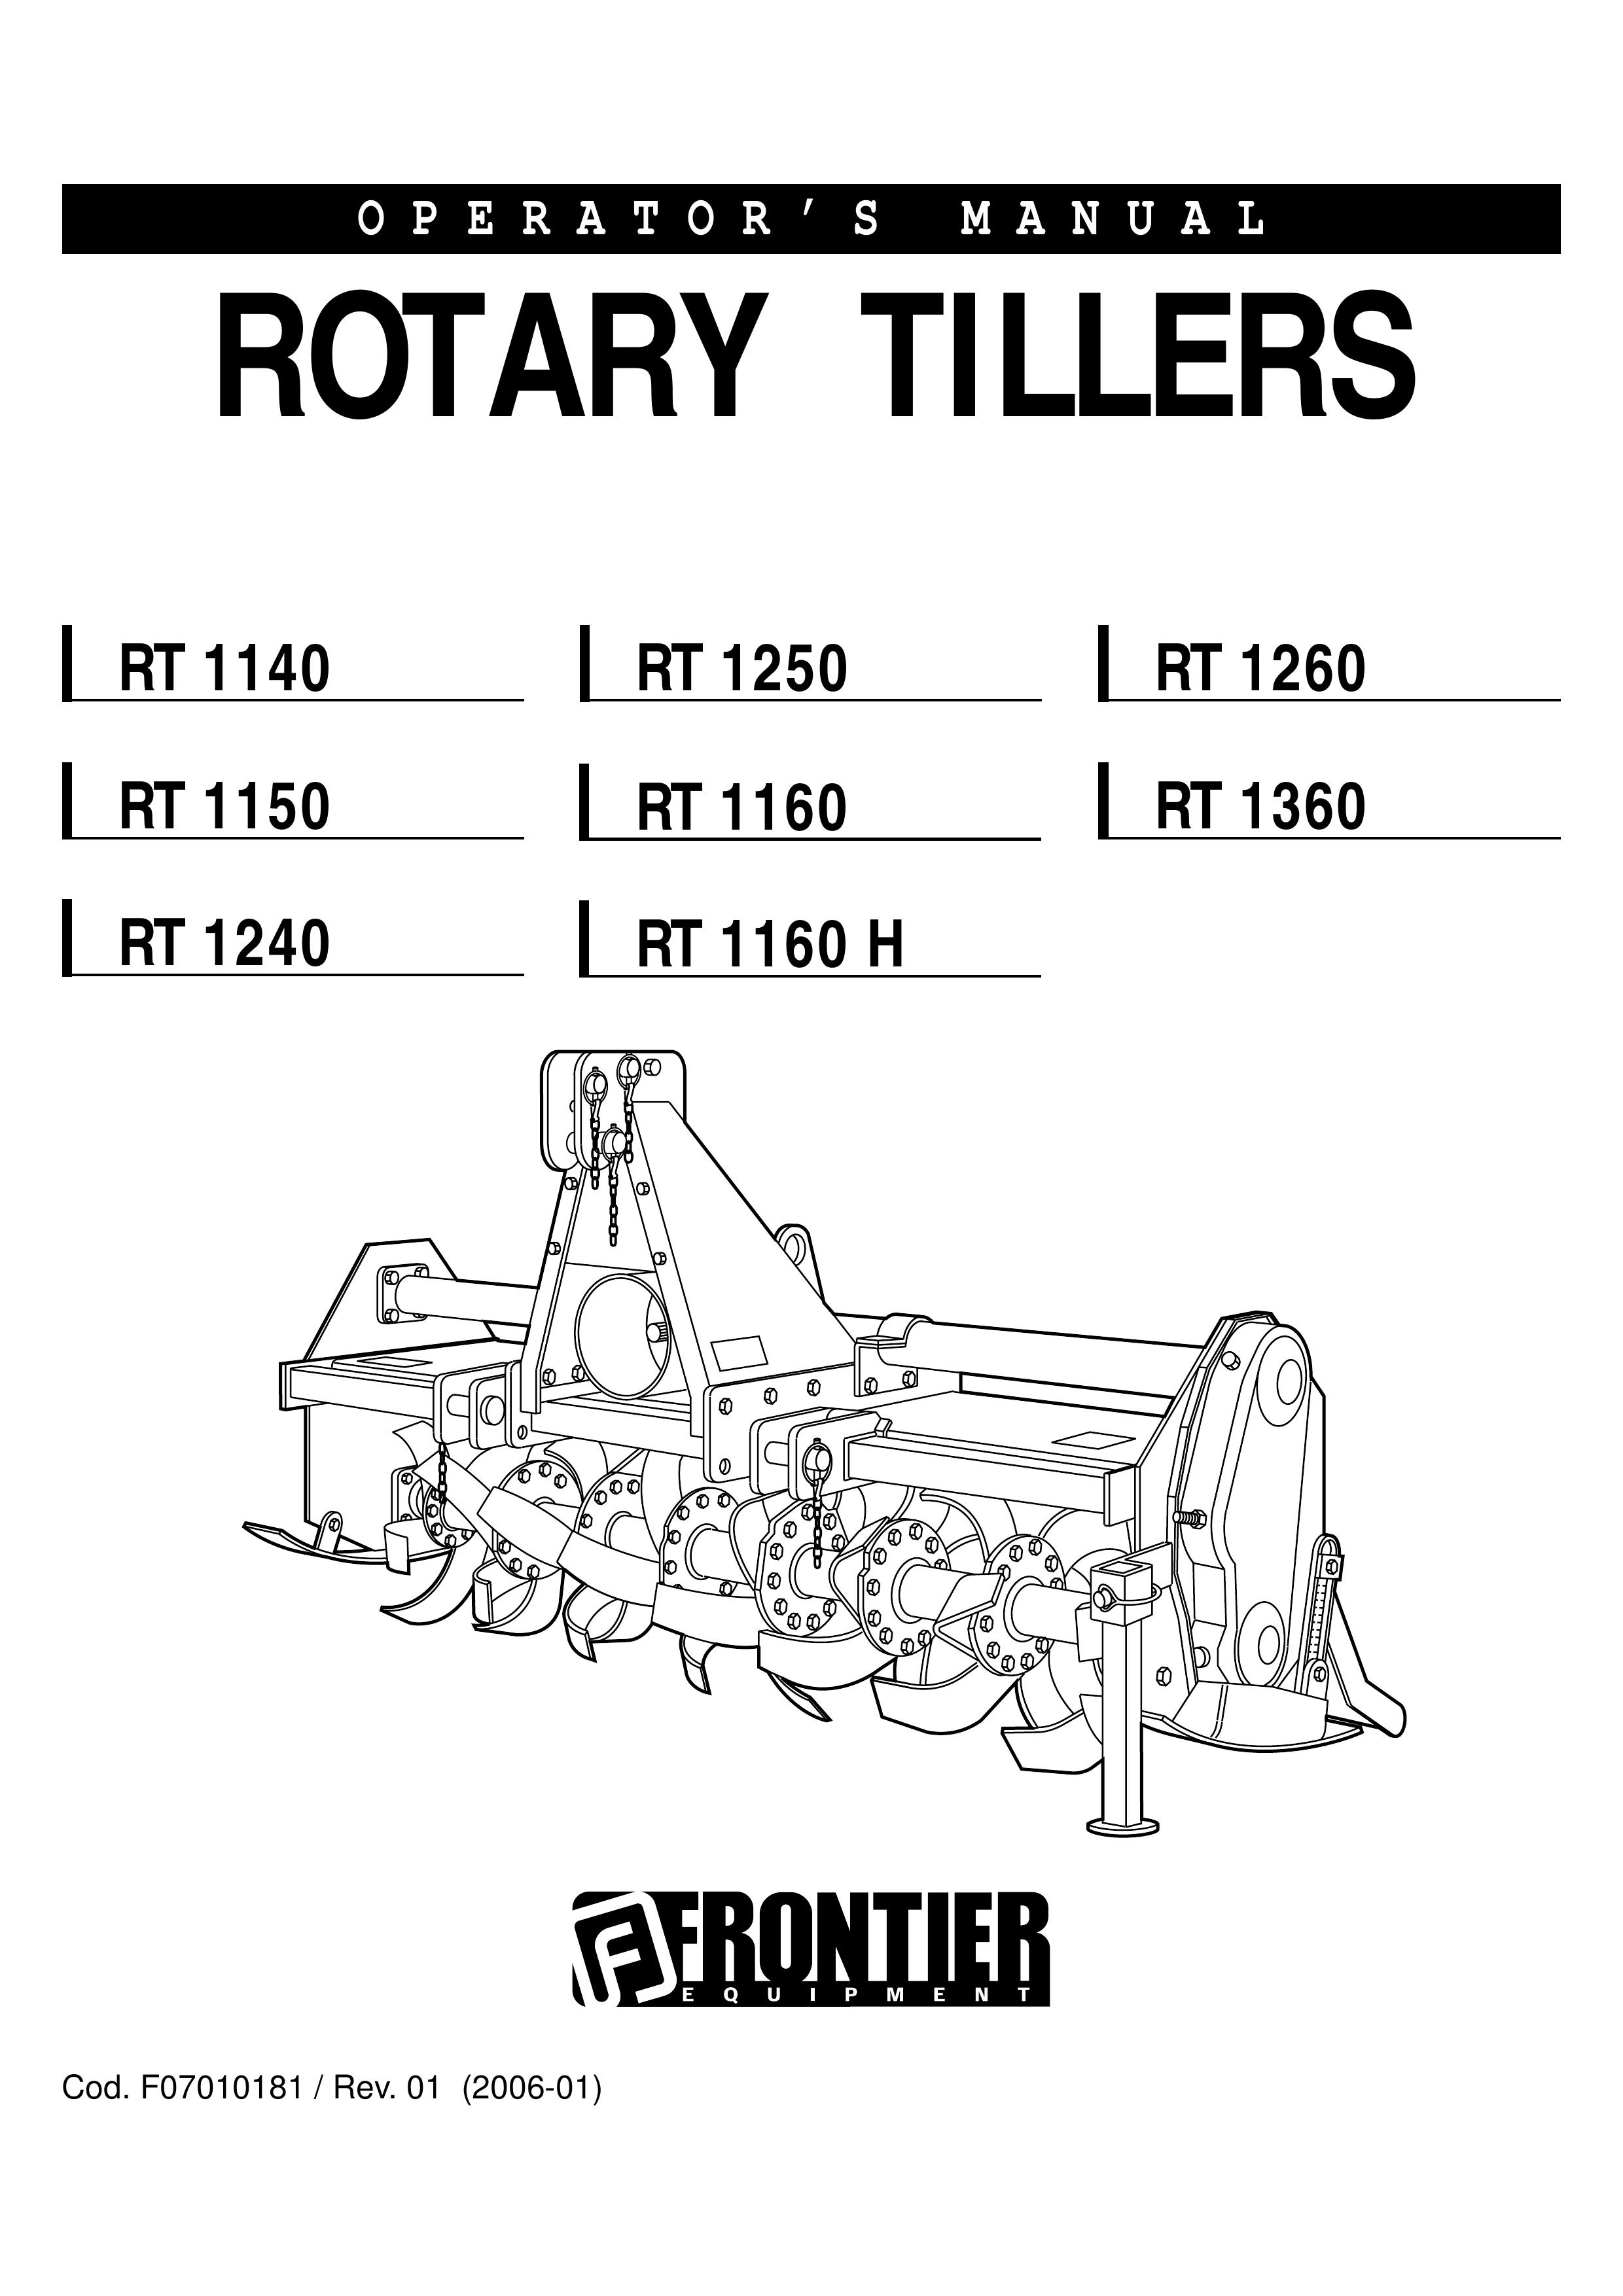 John Deere RT1160H Tiller User Manual